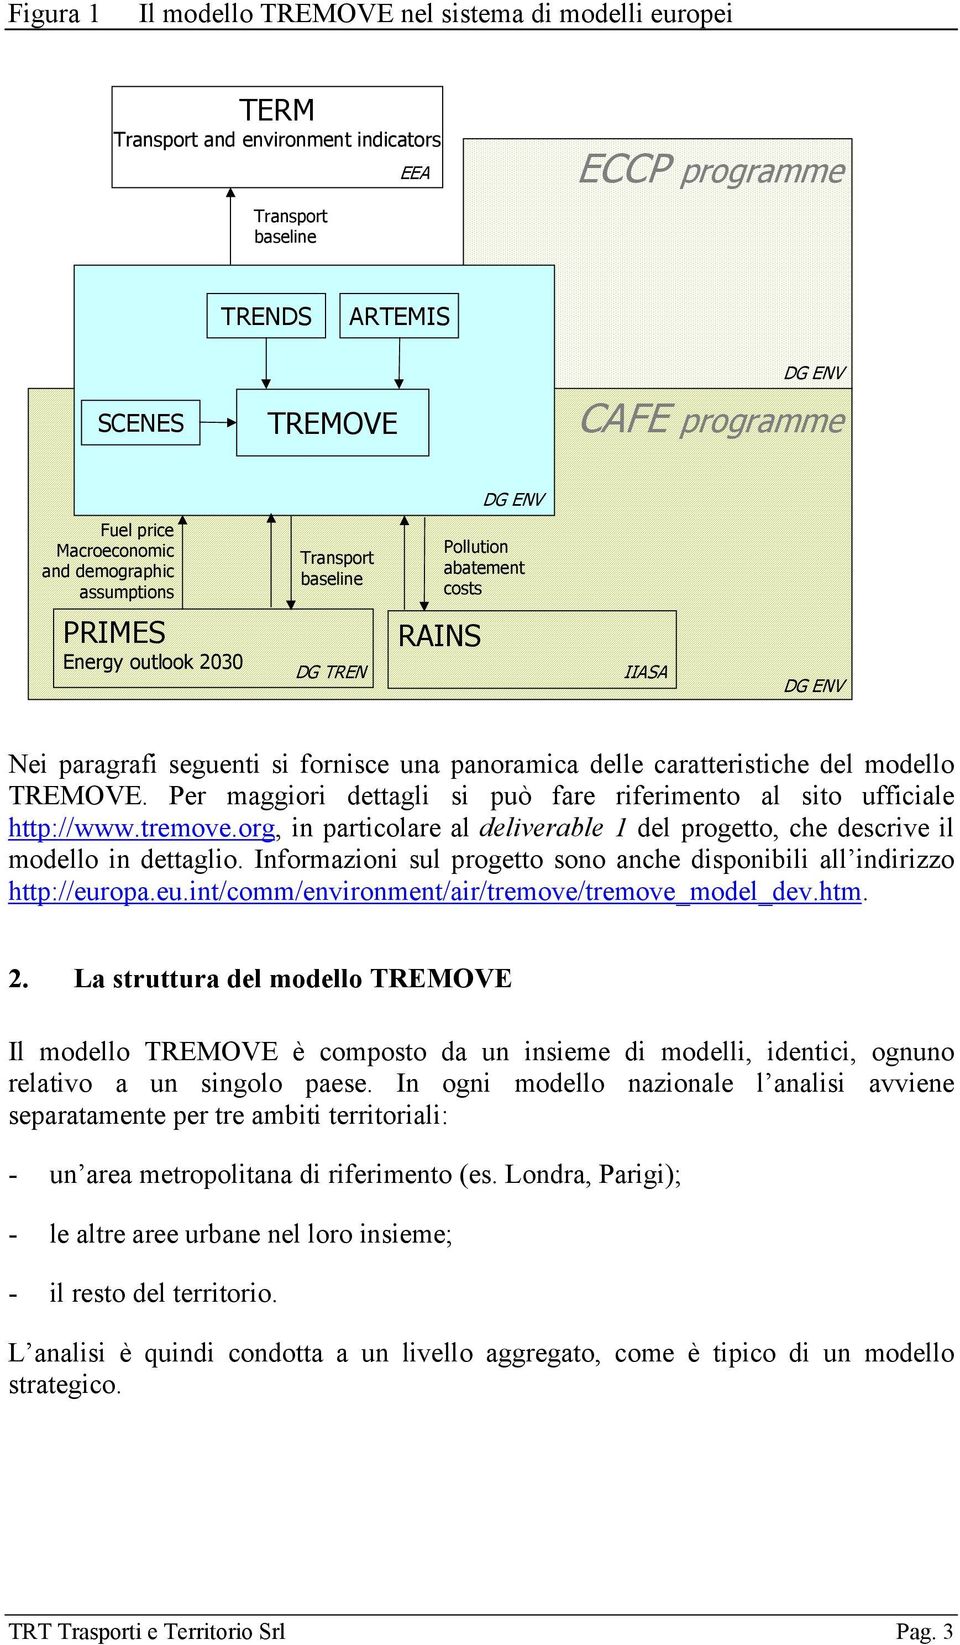 panoramica delle caratteristiche del modello TREMOVE. Per maggiori dettagli si può fare riferimento al sito ufficiale http://www.tremove.